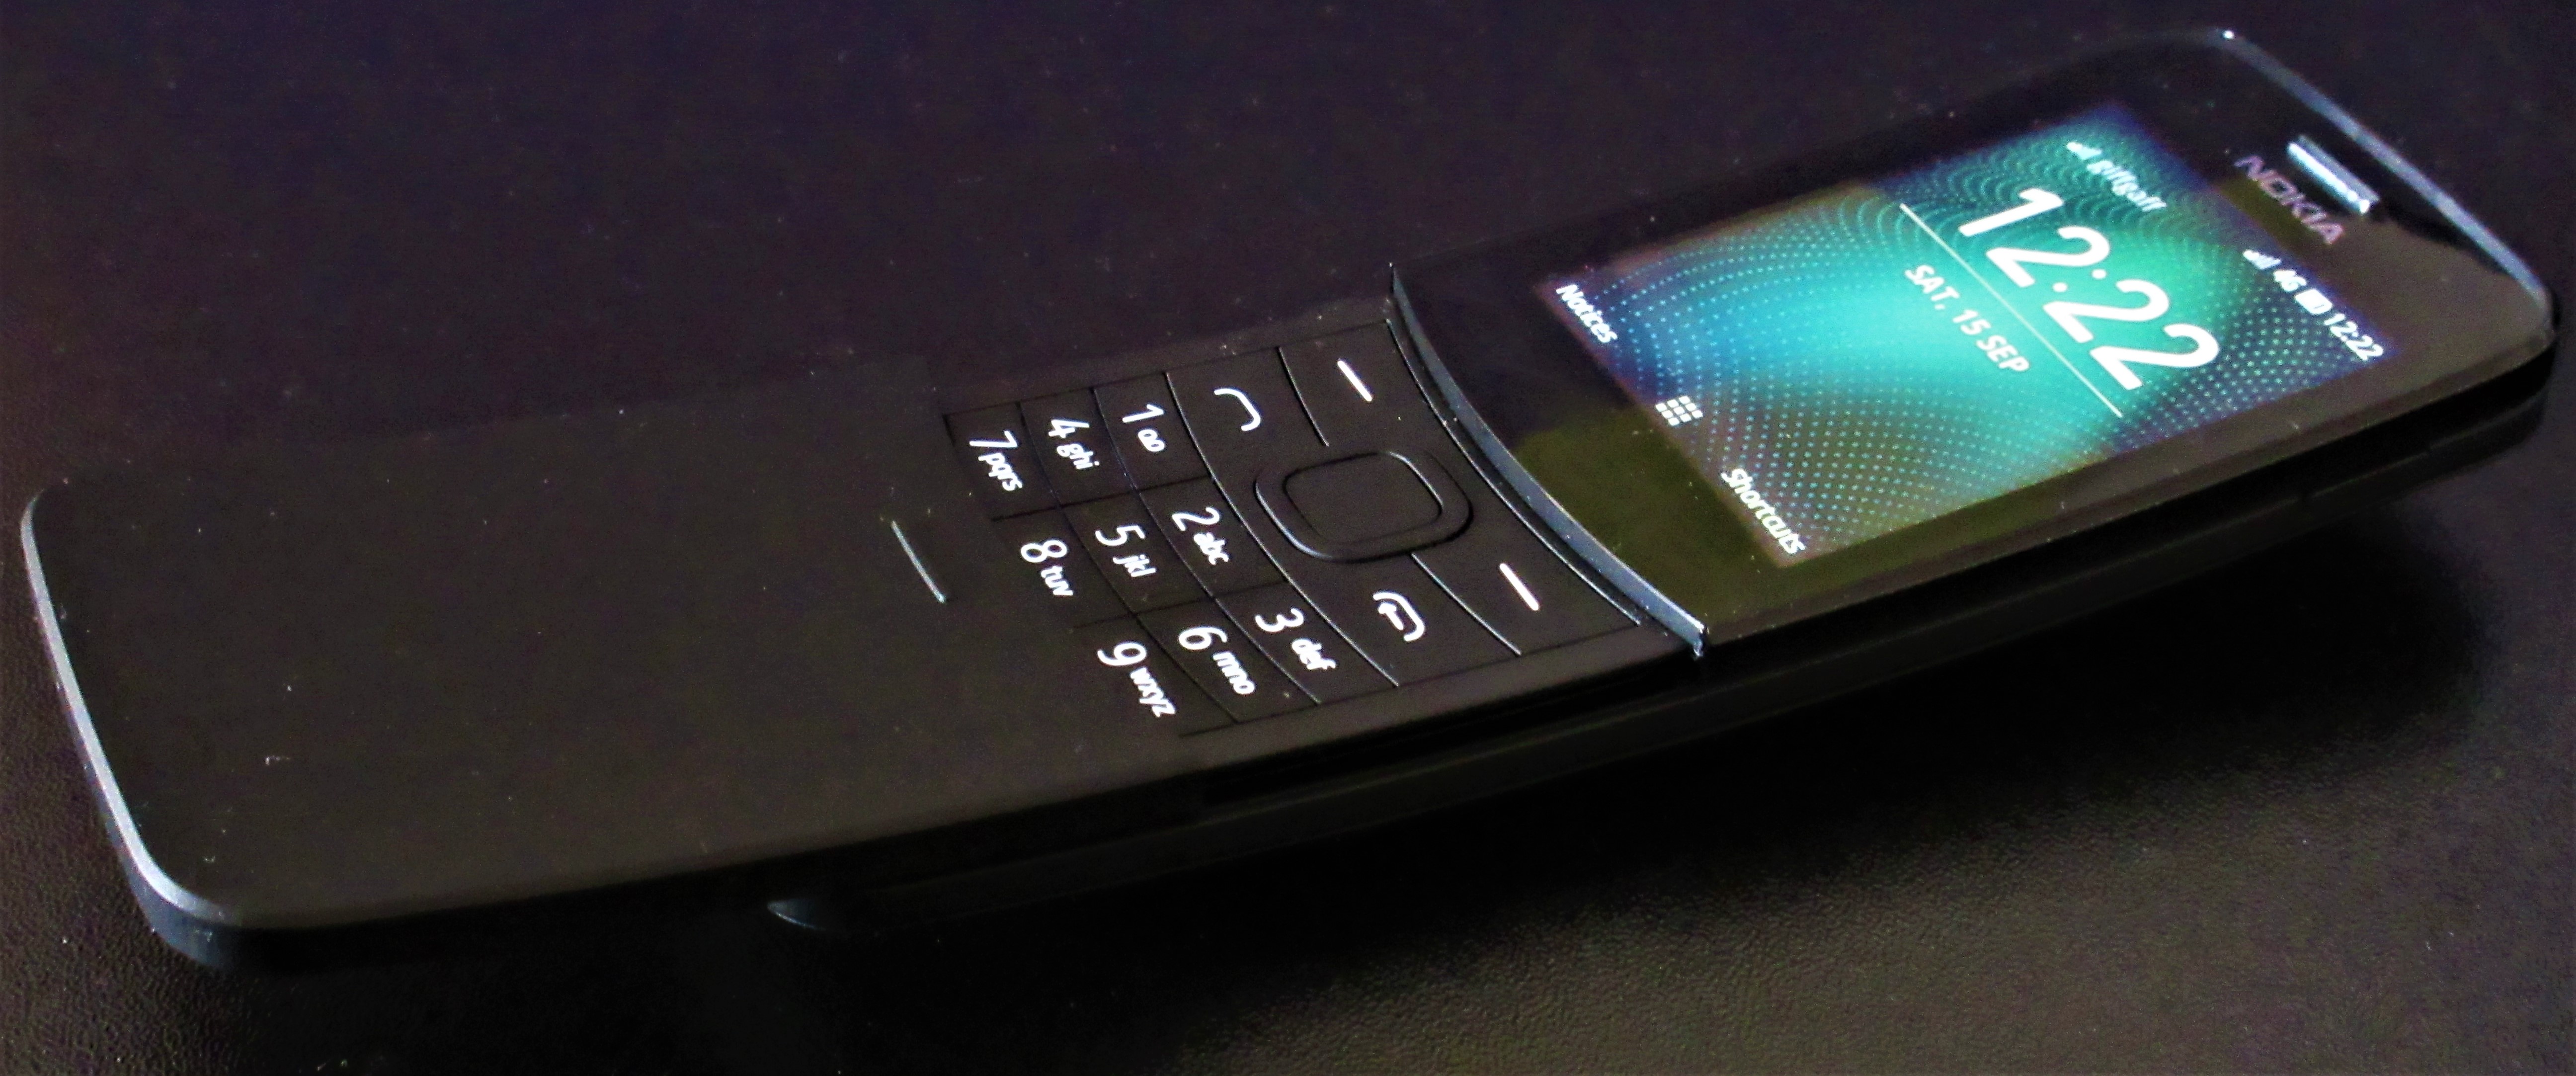 Nokia Slide Phones